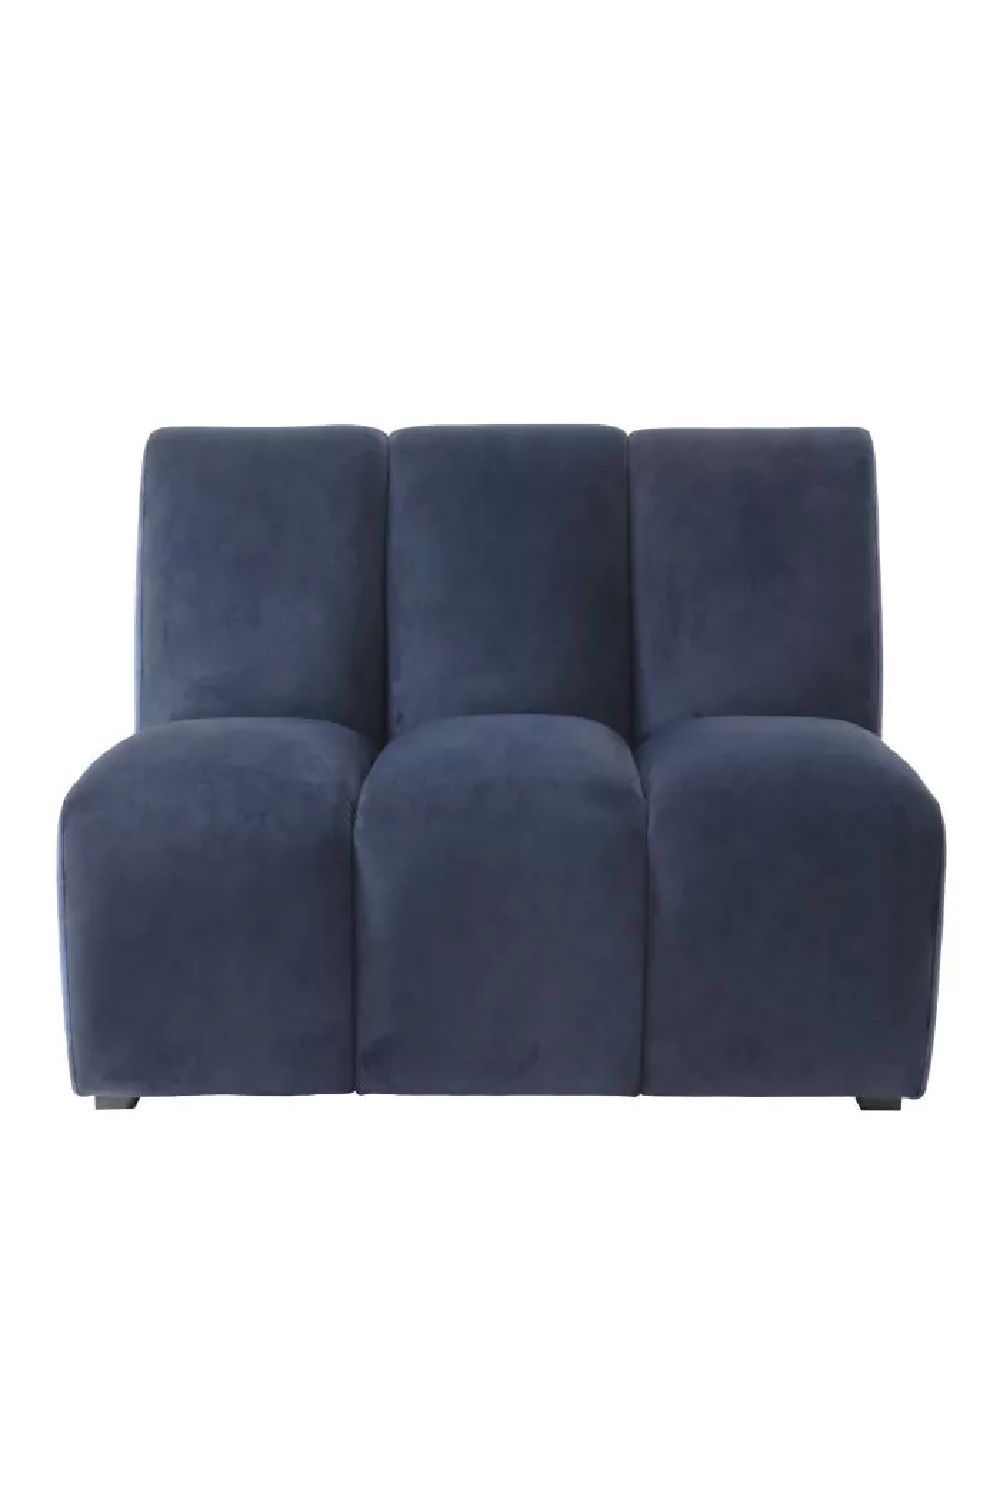 Channel Stitched Modern Sofa | Eichholtz Lando | Oroa.com